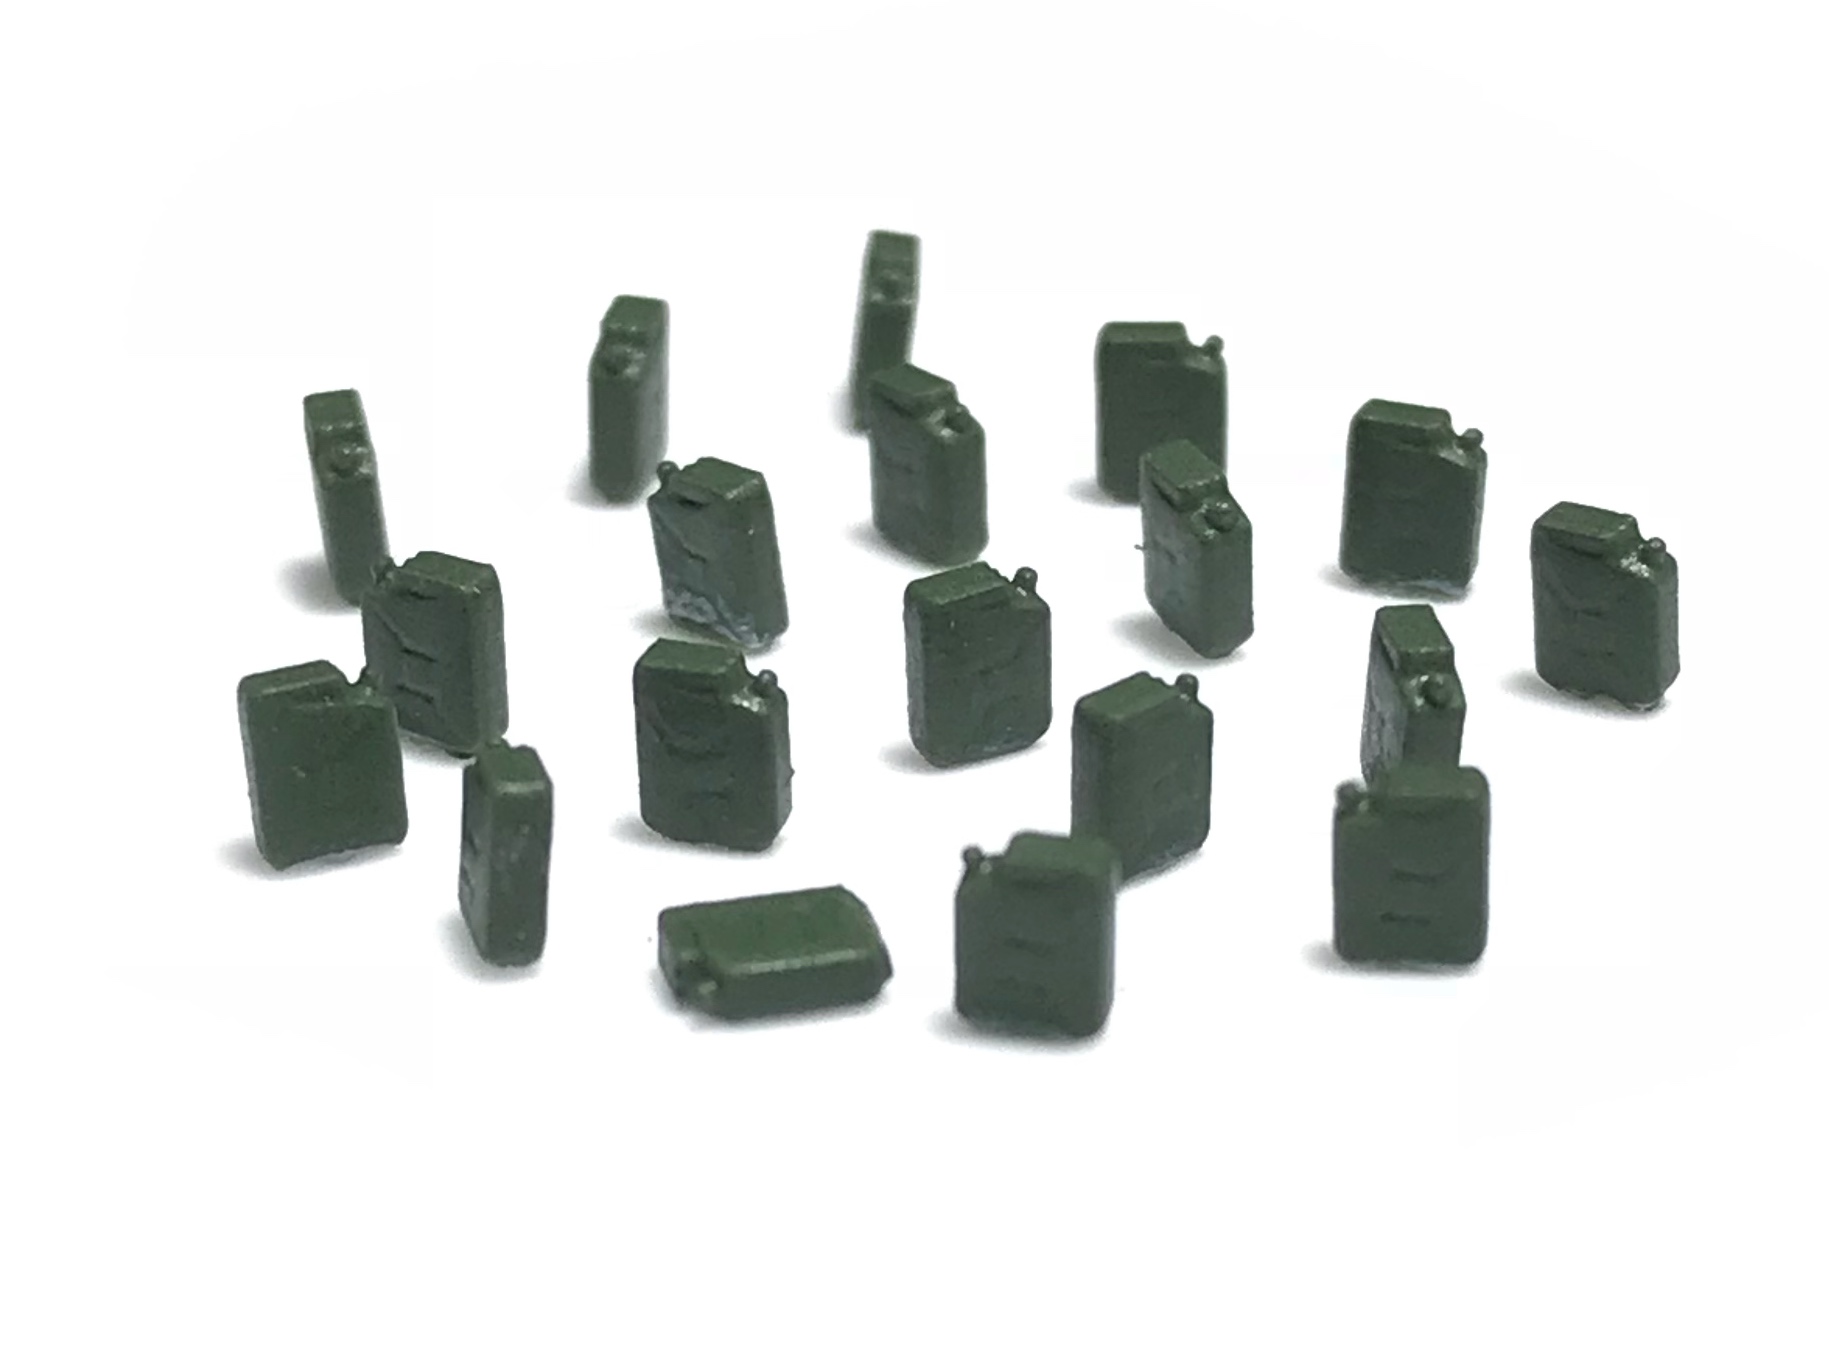 87Train – Conjunto de 8 Bidones de Fuel de color Verde, Escala H0, Ref: 221003.